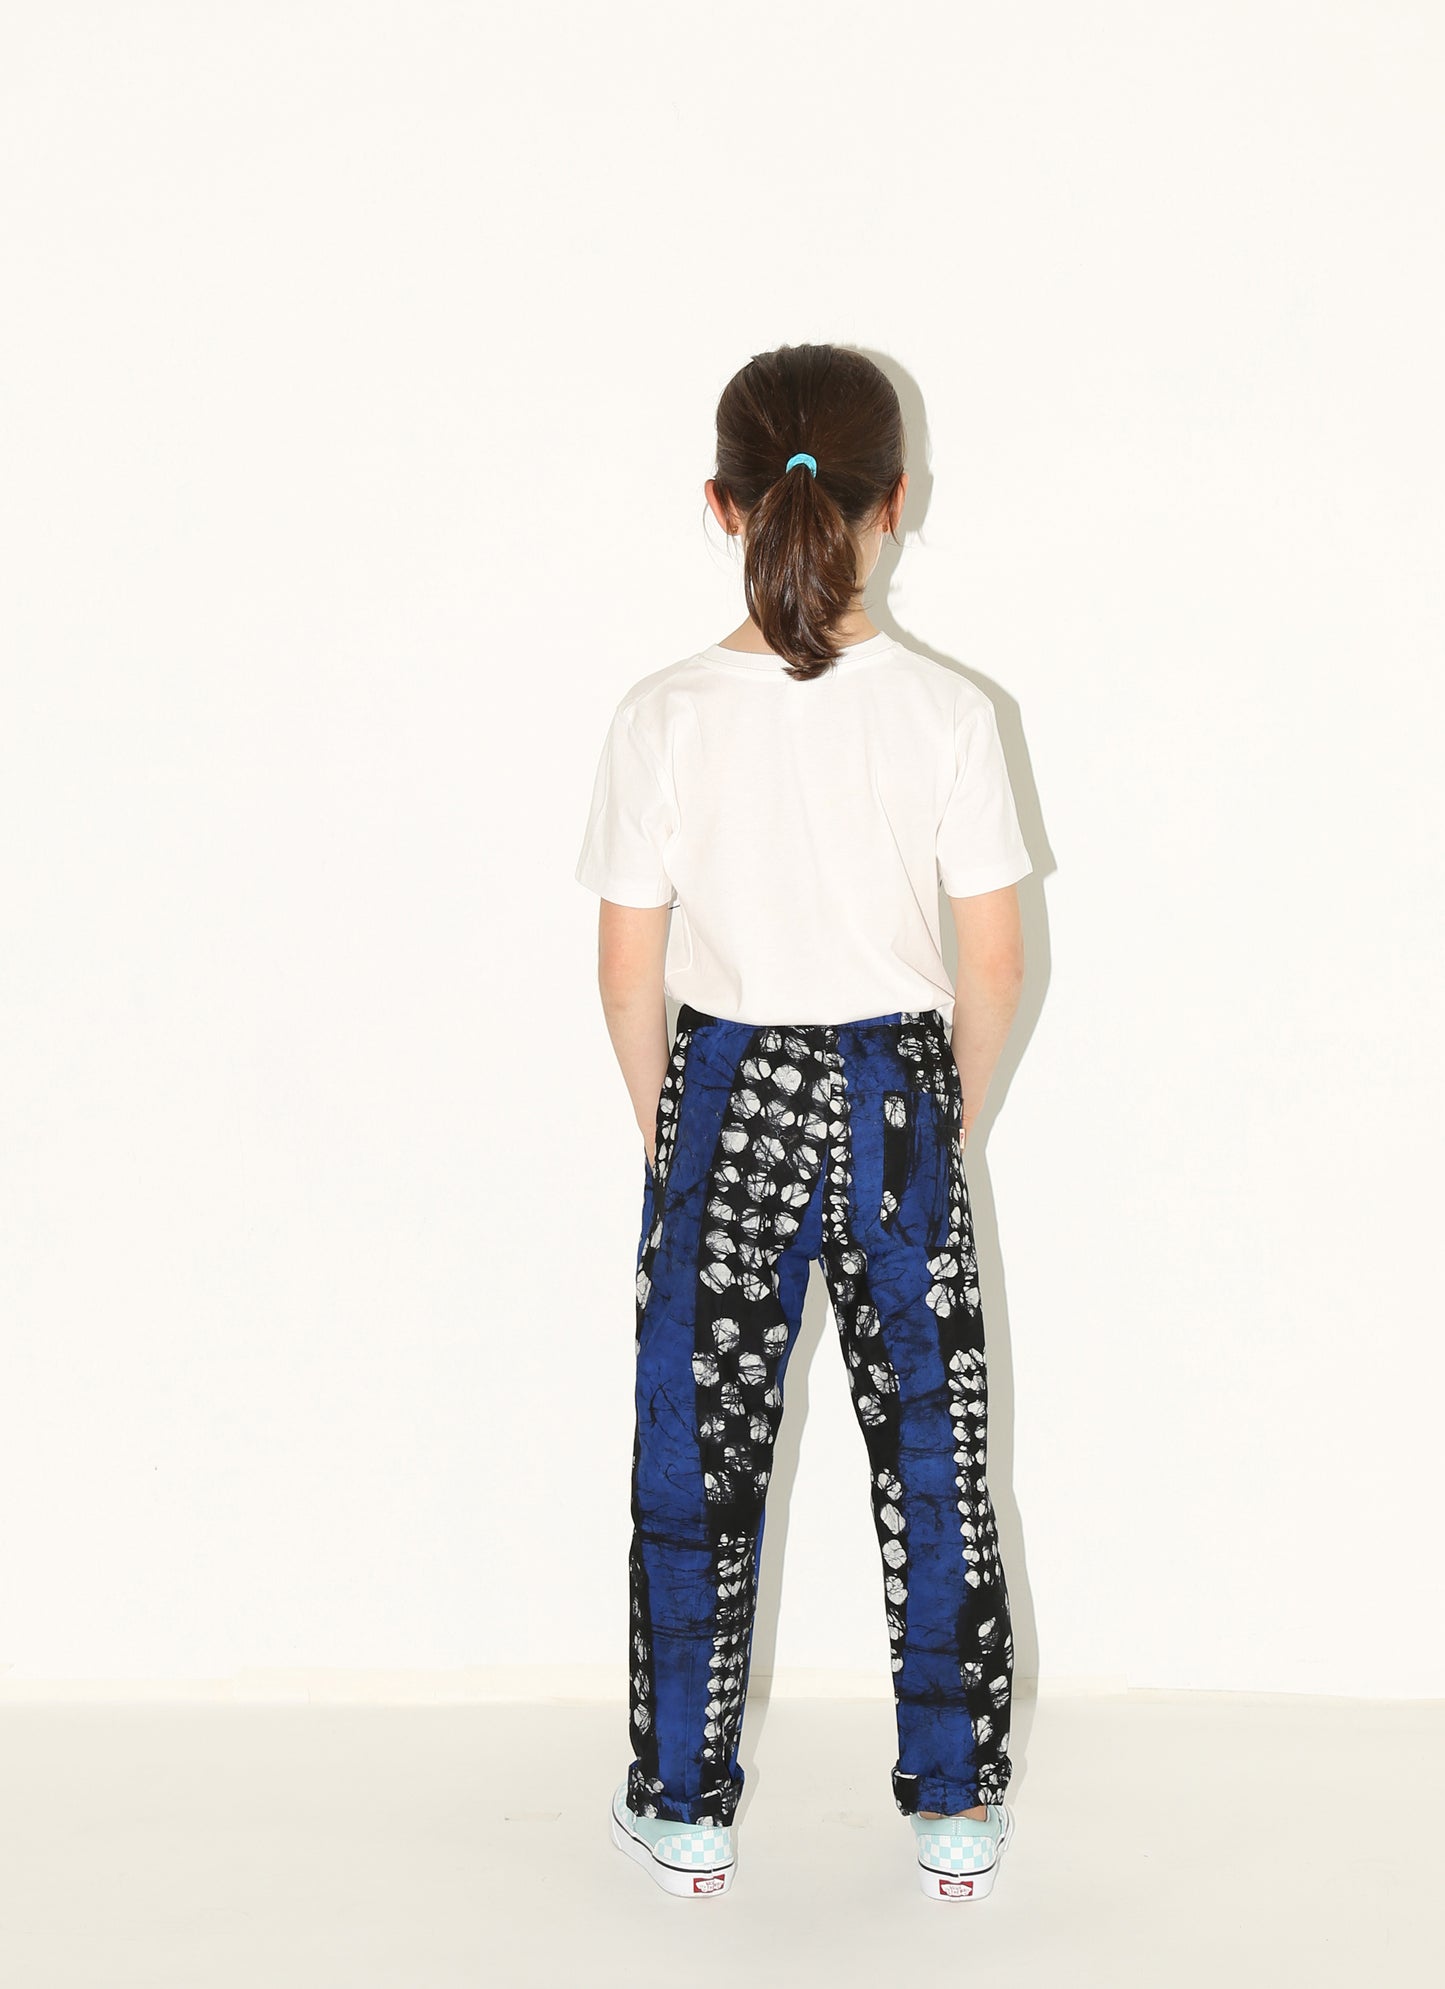 MOMO Pants / Checkers Galore